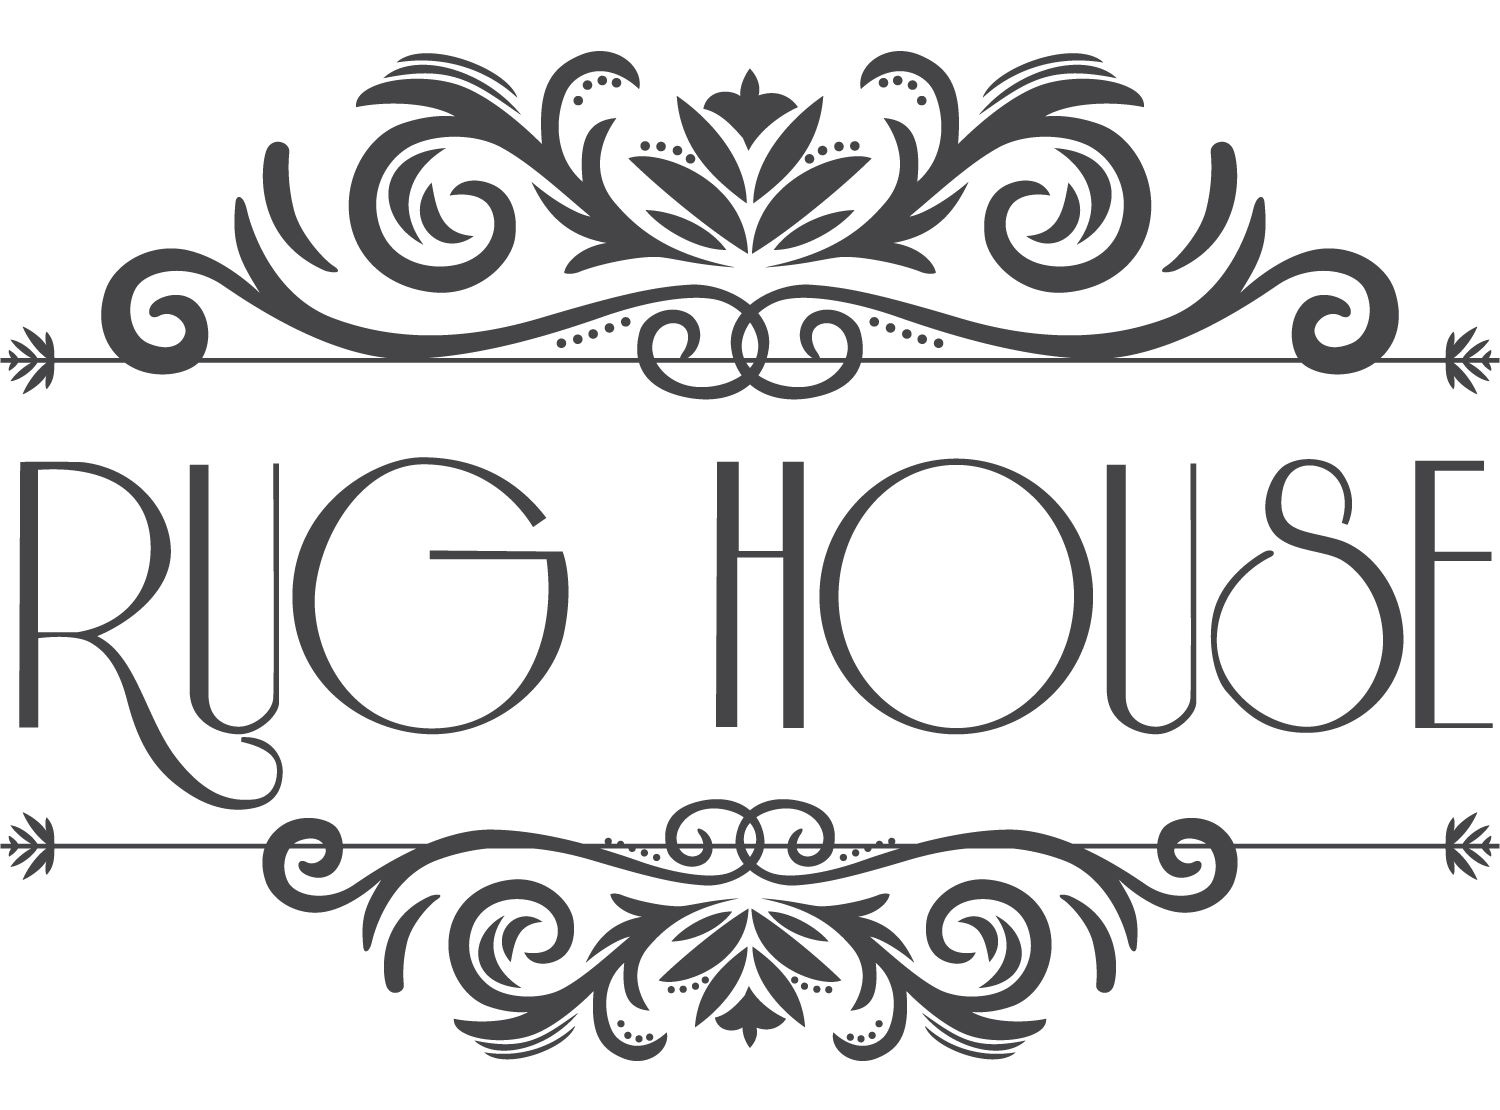 Rug House NZ